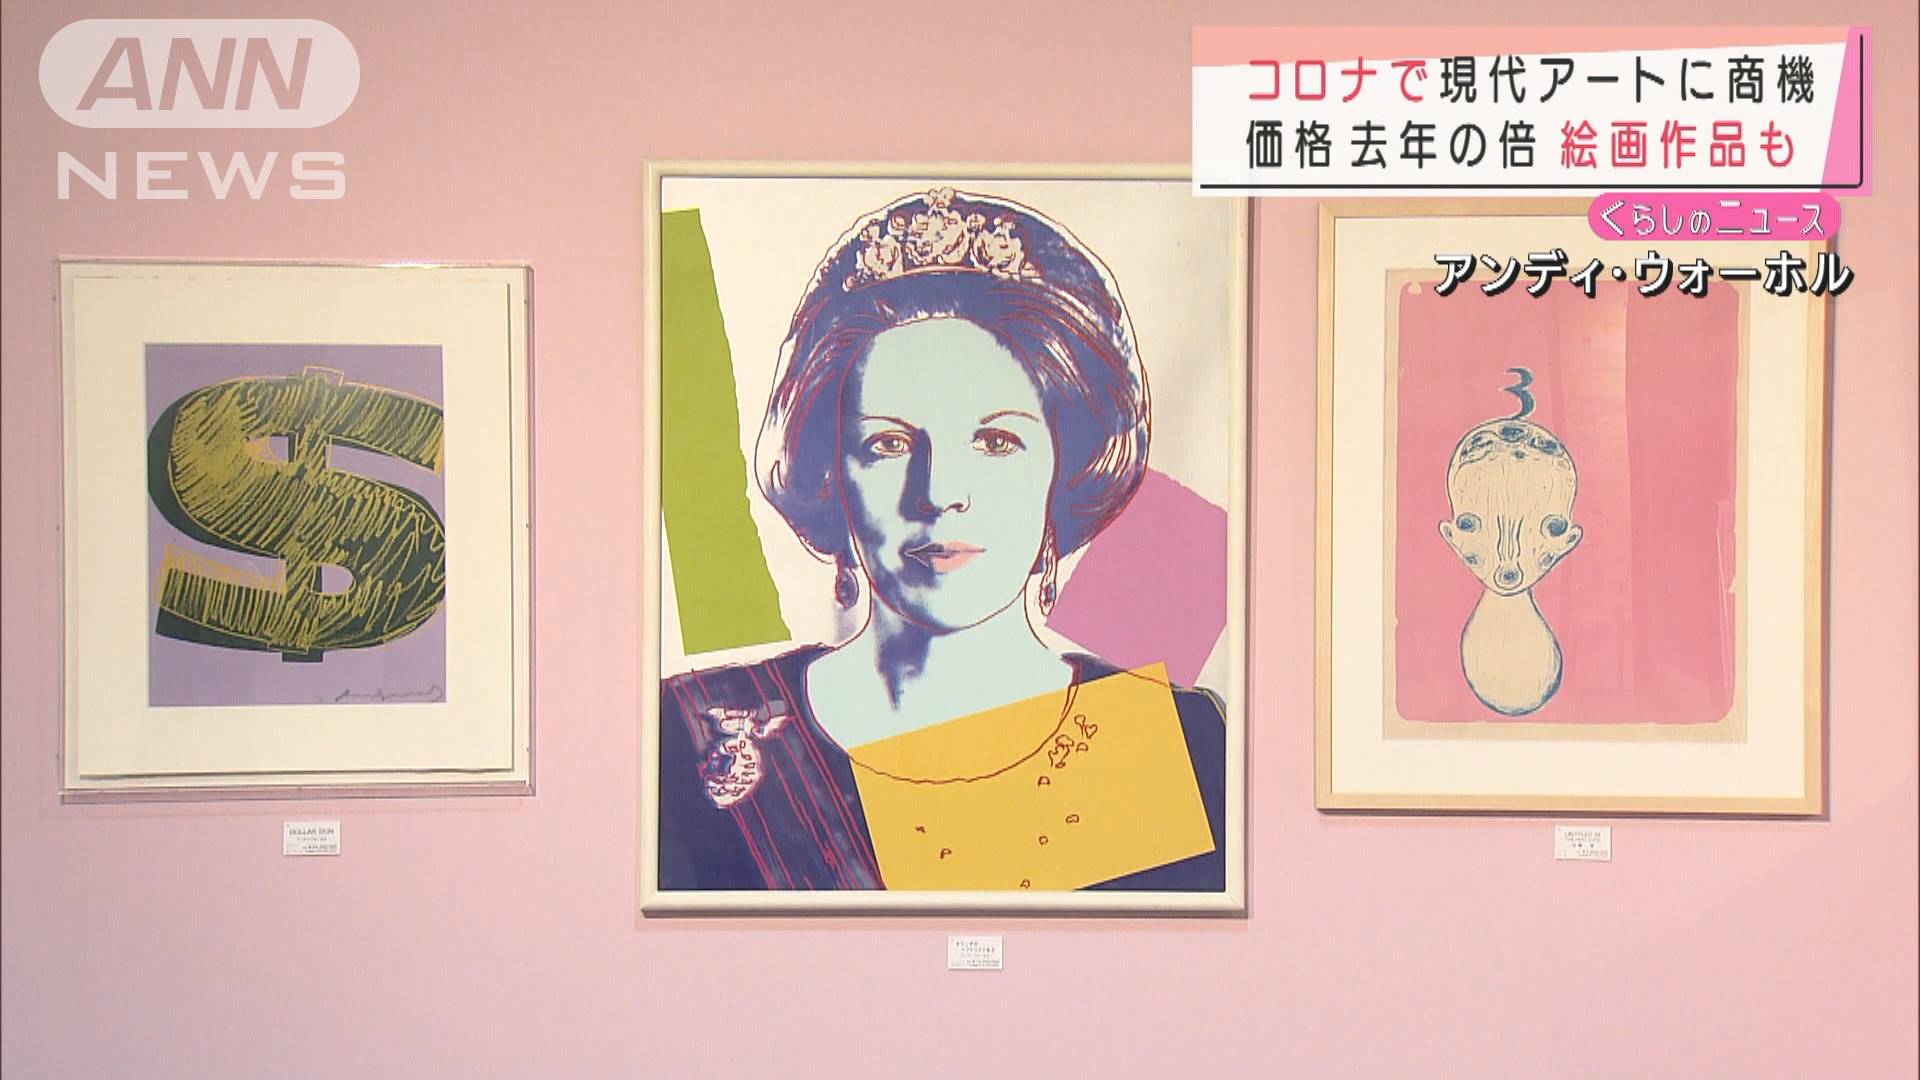 富裕層向けに百貨店が現代アート販売 コロナ影響 テレ朝news テレビ朝日のニュースサイト